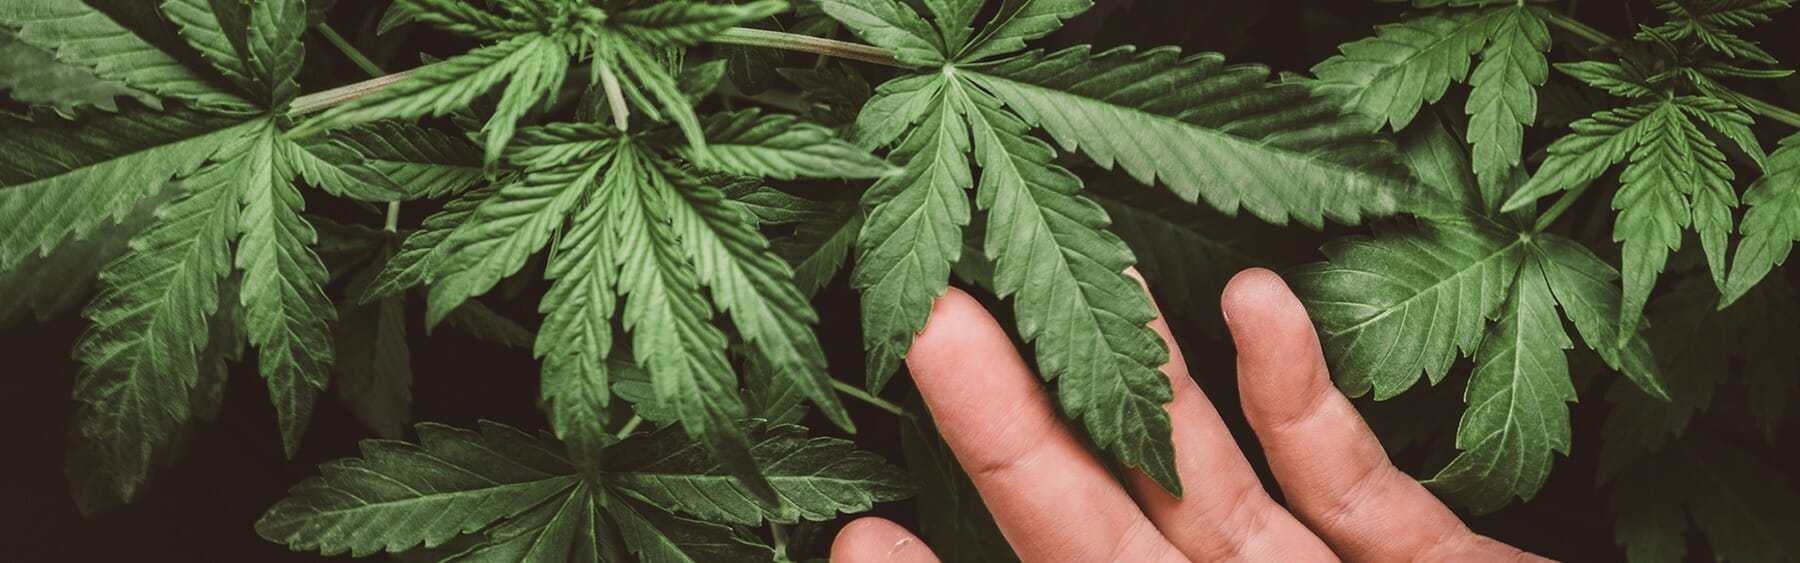 一个人的手伸向一株大麻植物。